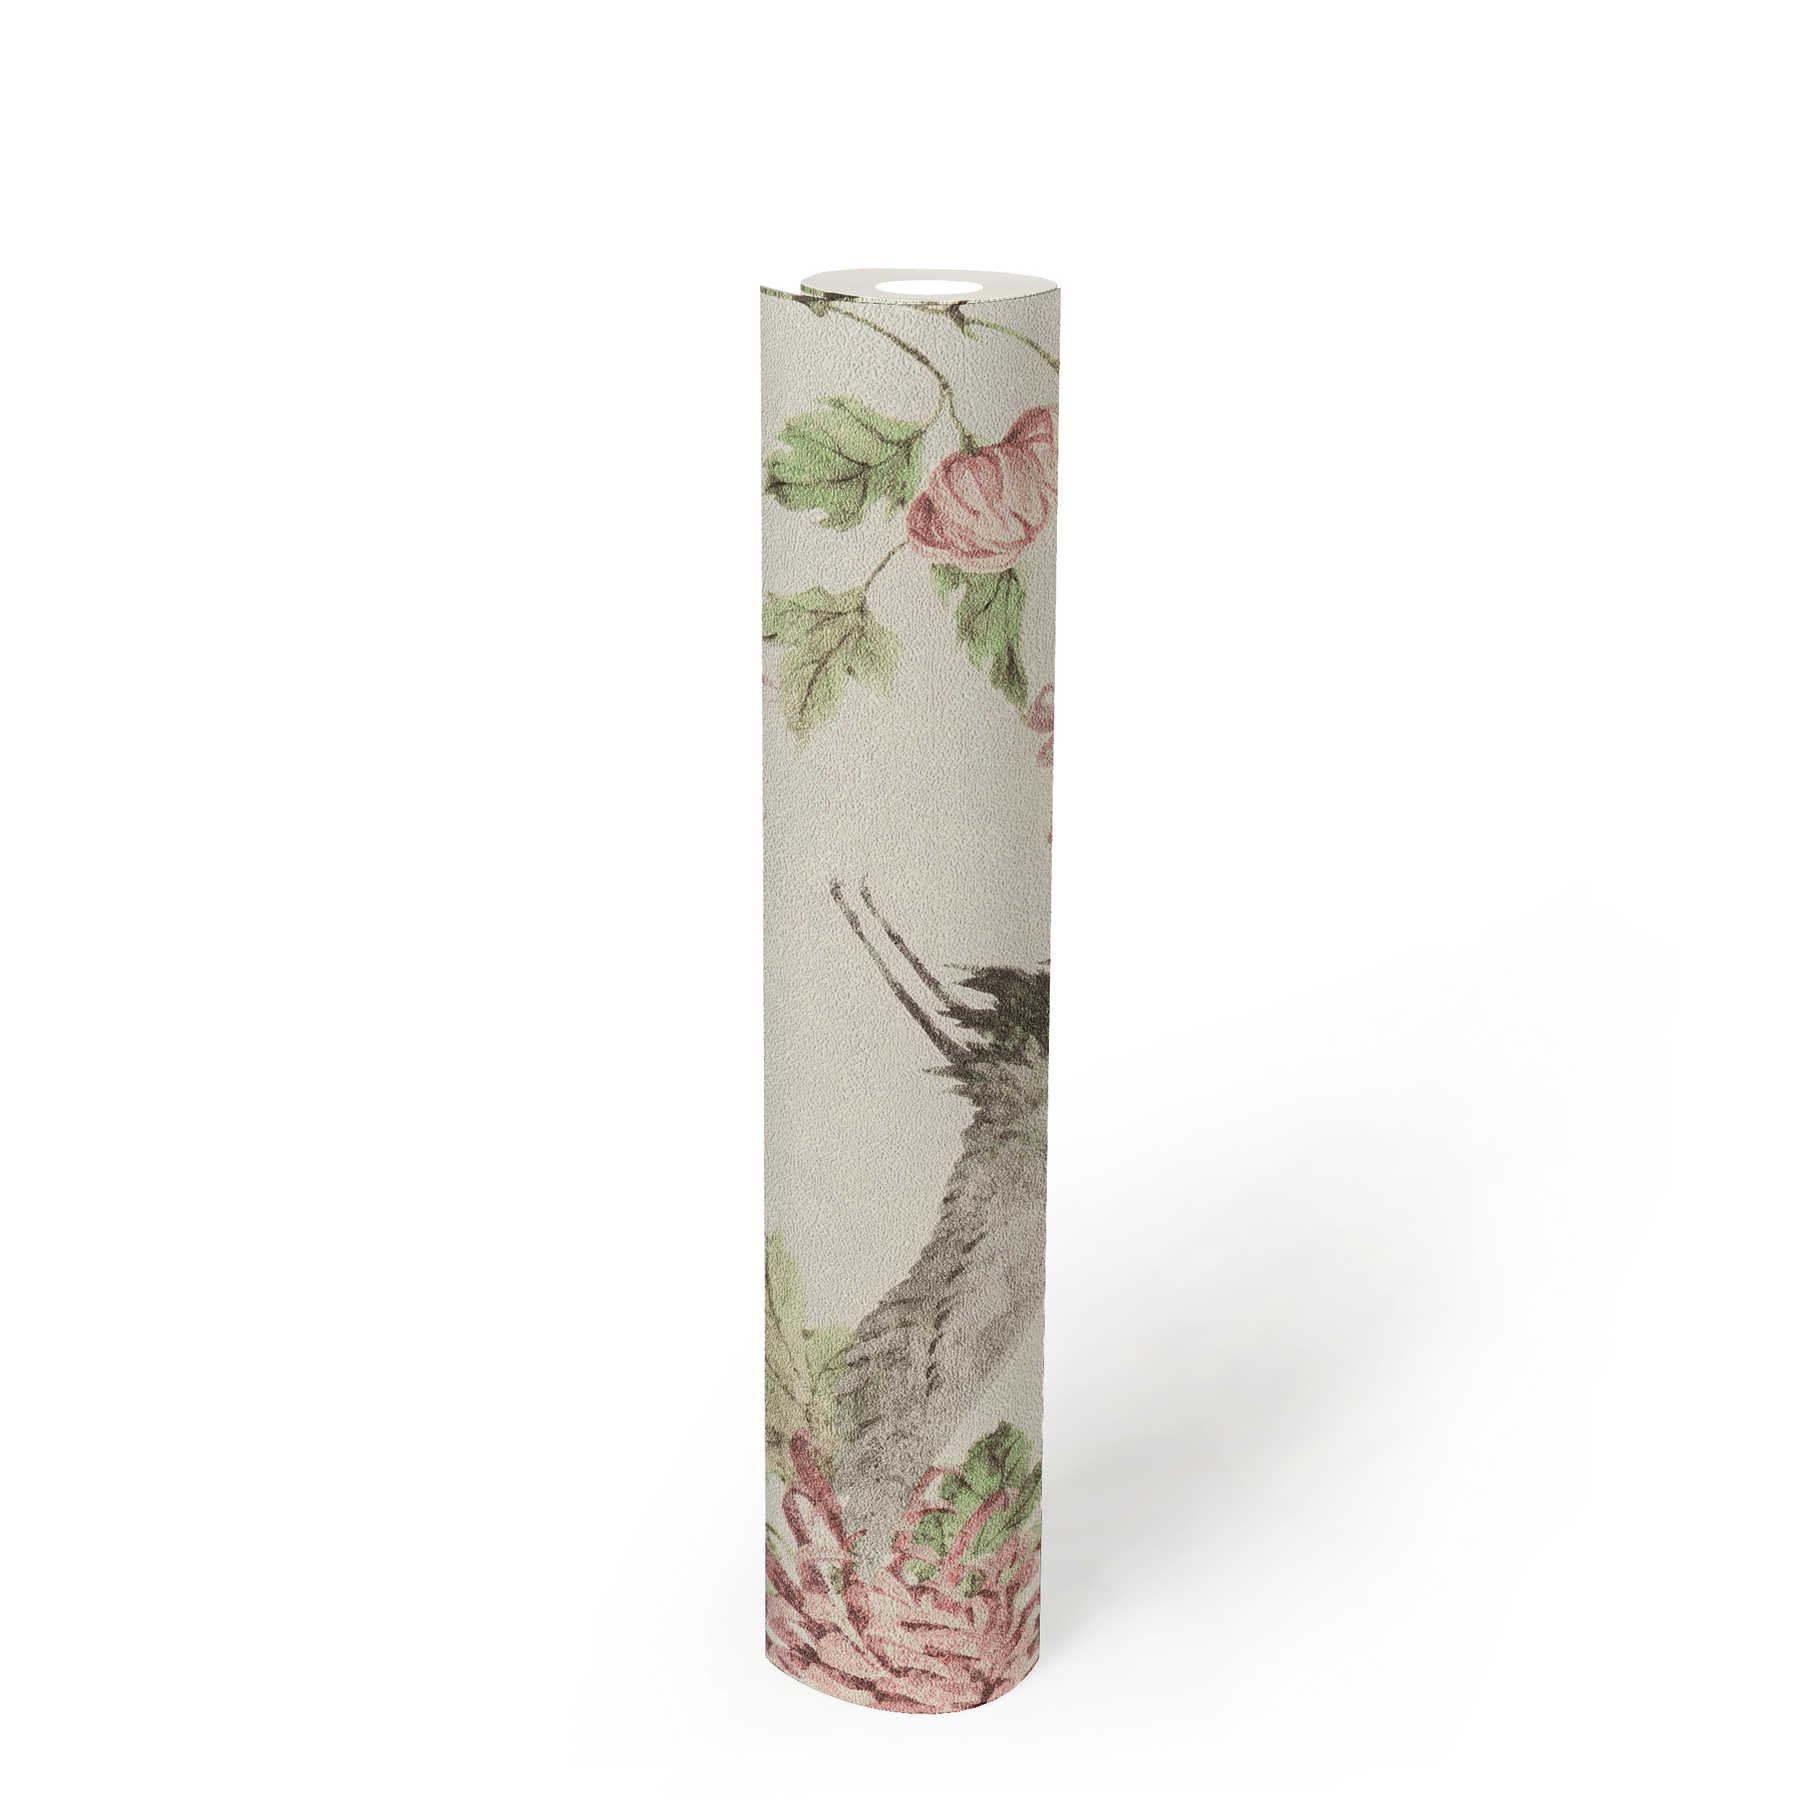             Patroonbehang met Aziatische kraanvogel en bloemmotief - roze, groen, wit
        